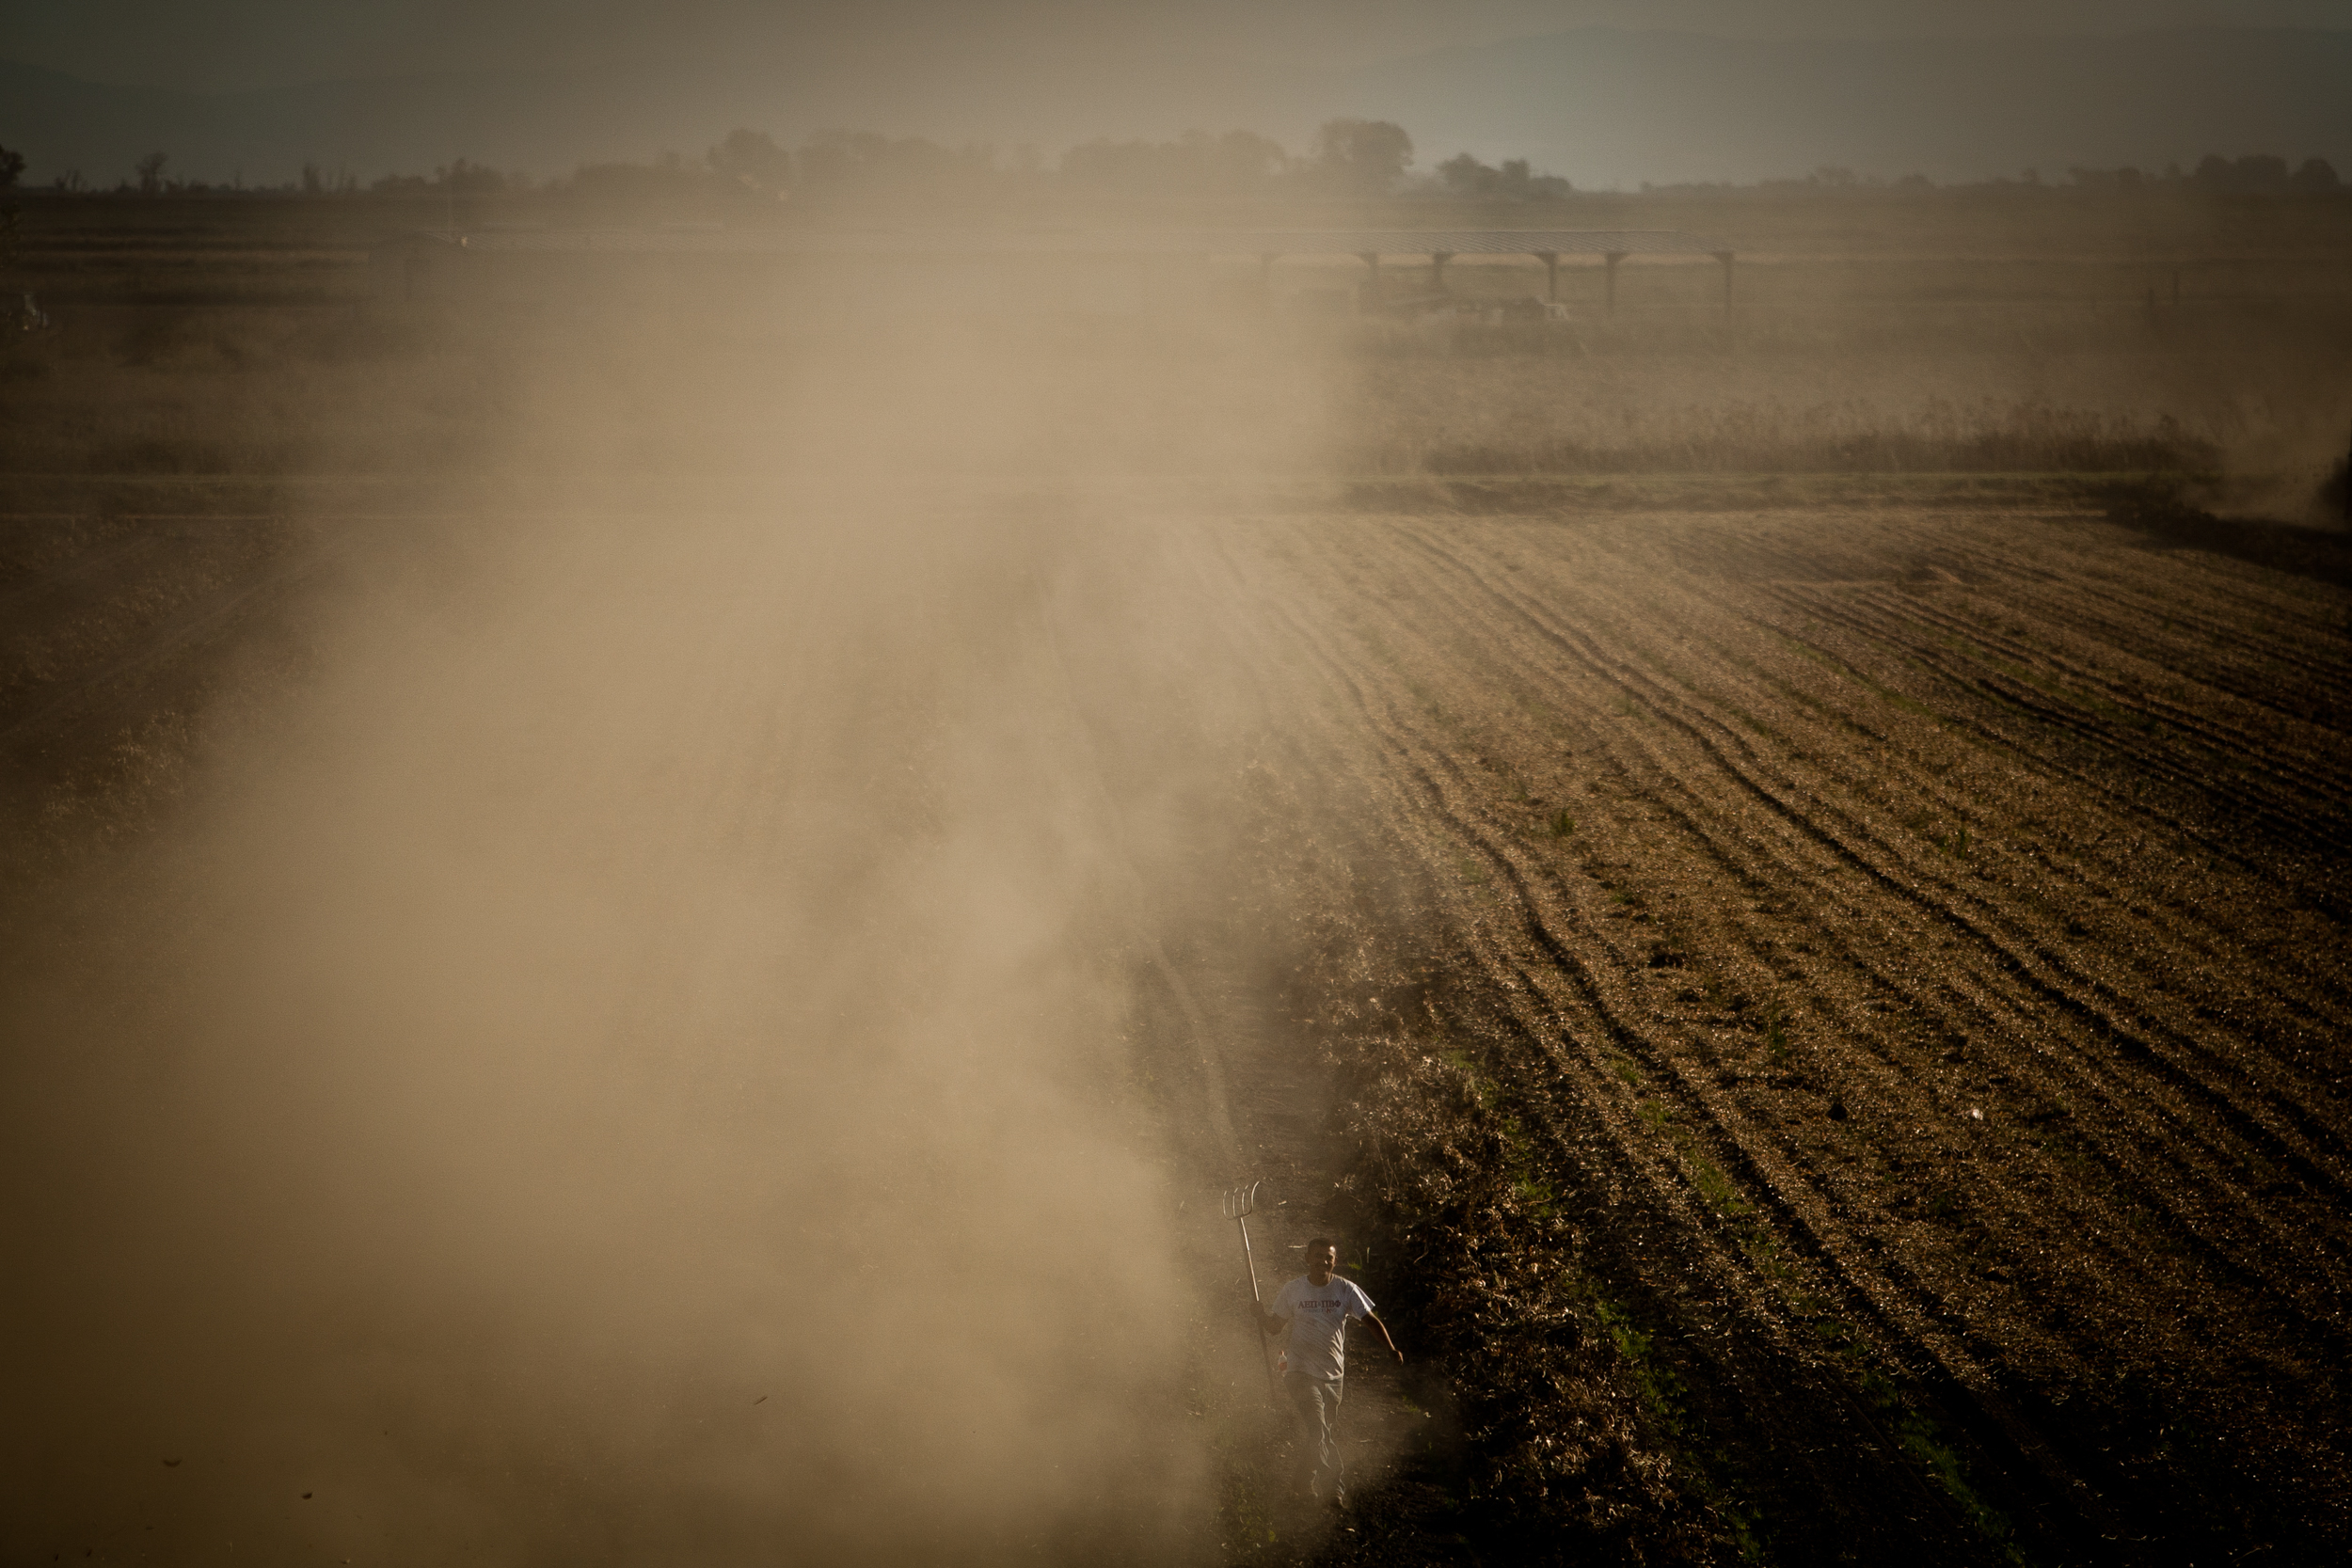  Farmworkers harvest corn silage on Brannan Island in California's Delta. 